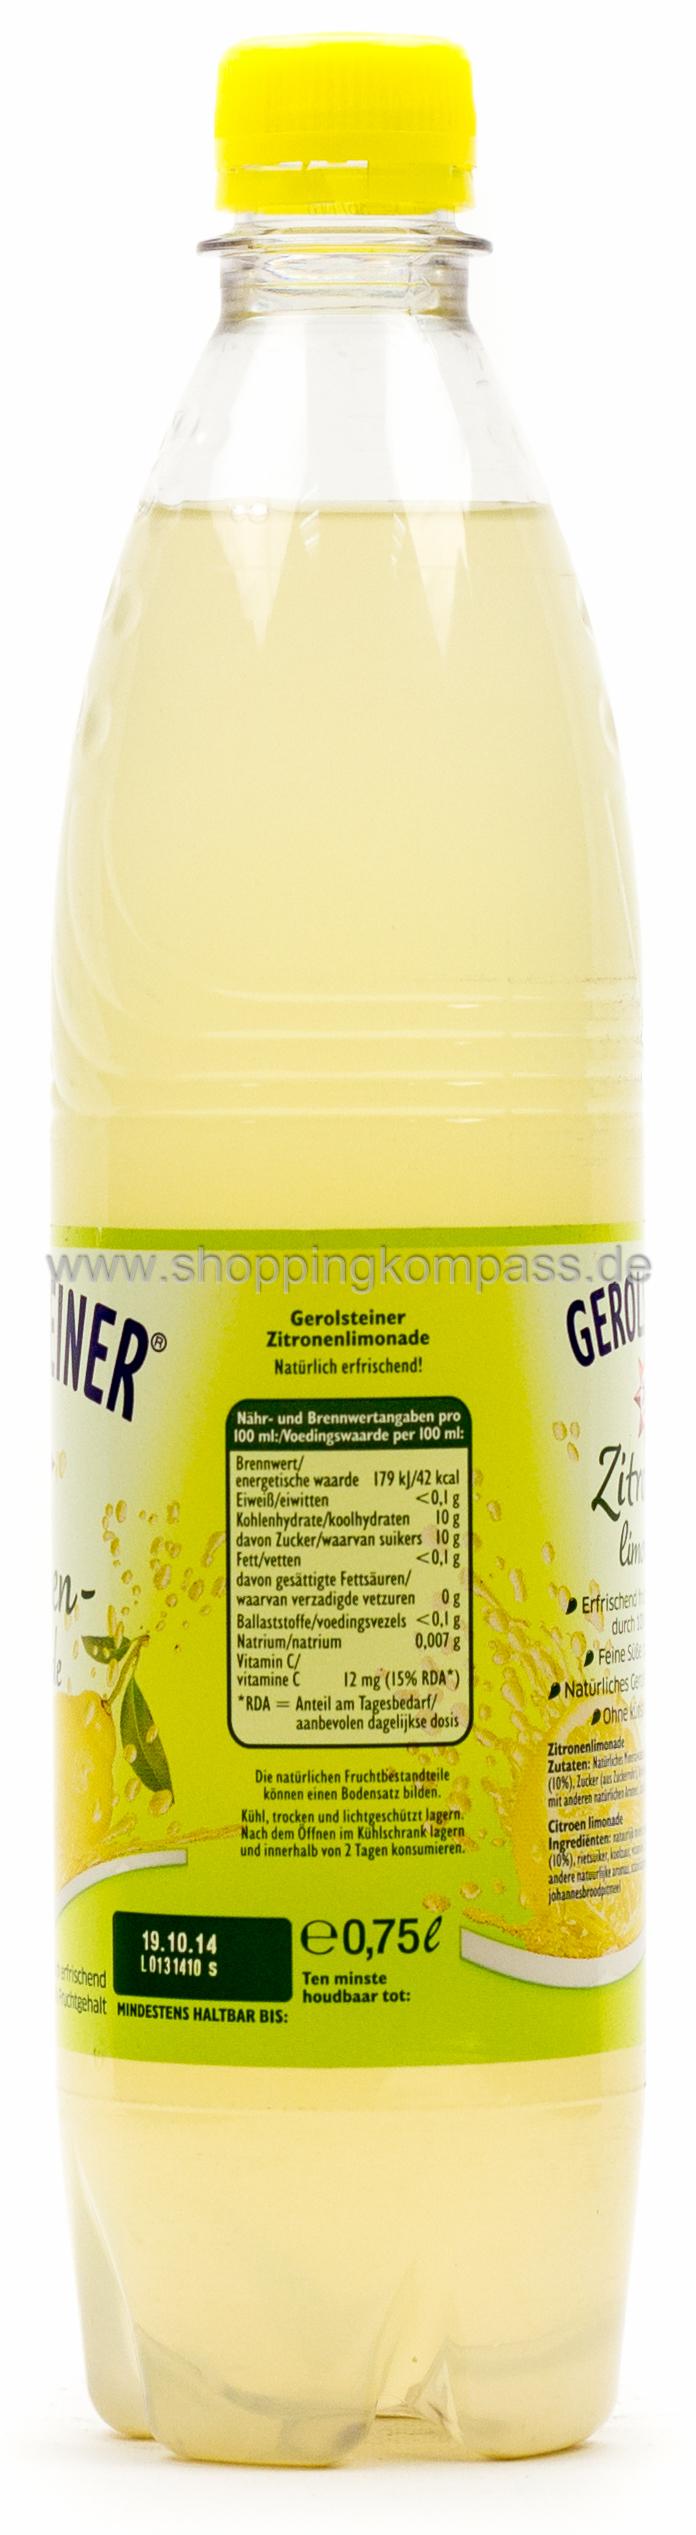 Gerolsteiner Limonade Zitrone trüb 0,75 l PET Mehrweg